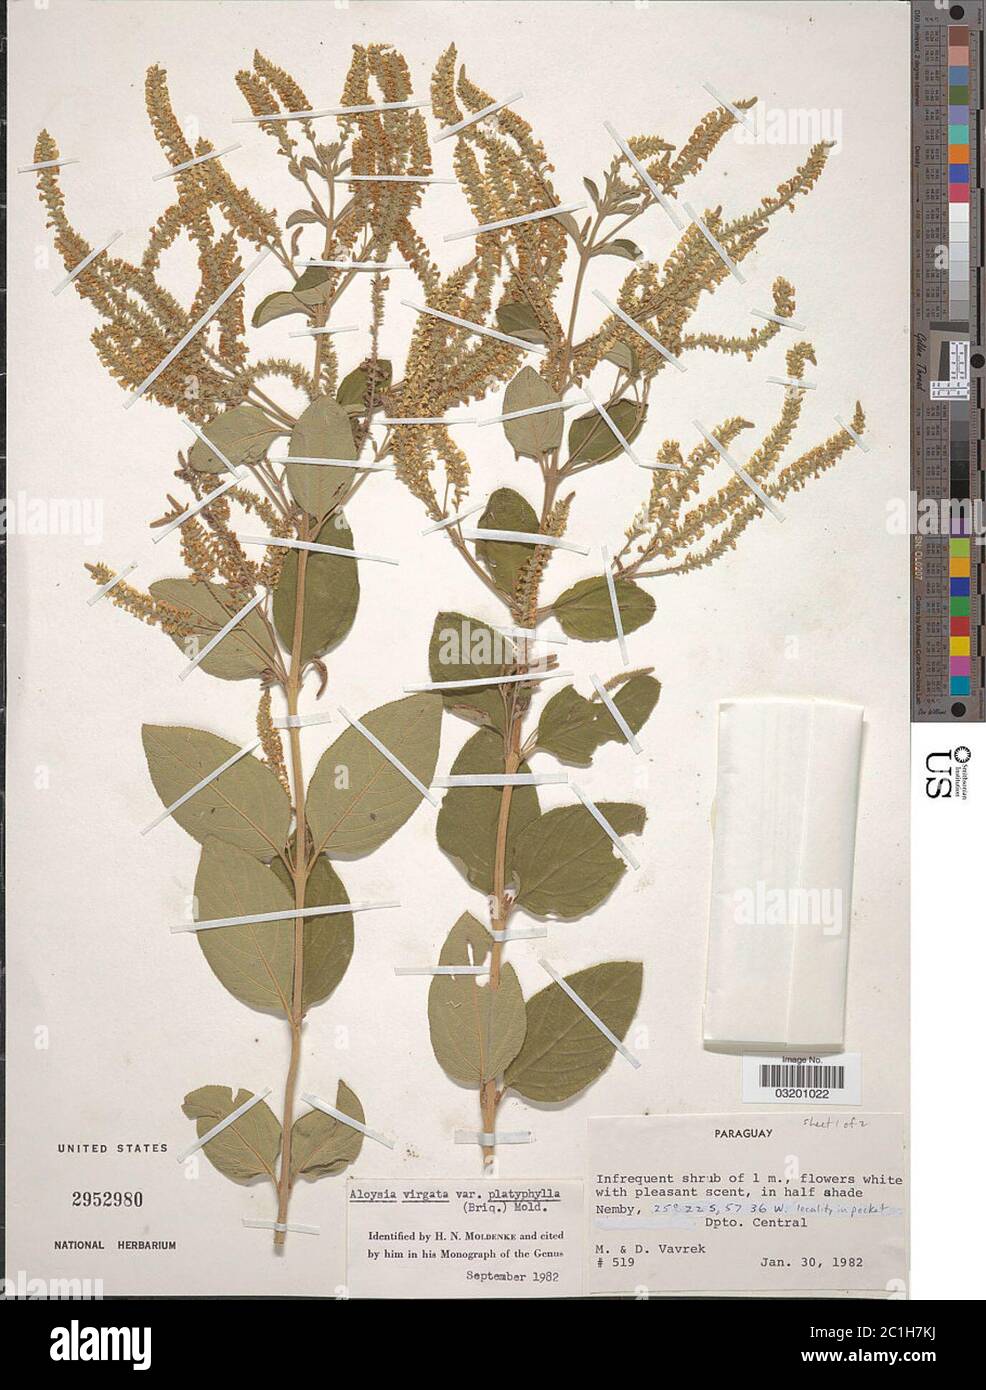 Aloysia virgata var platyphylla Briq Moldenke Aloysia virgata var platyphylla Briq Moldenke. Stock Photo